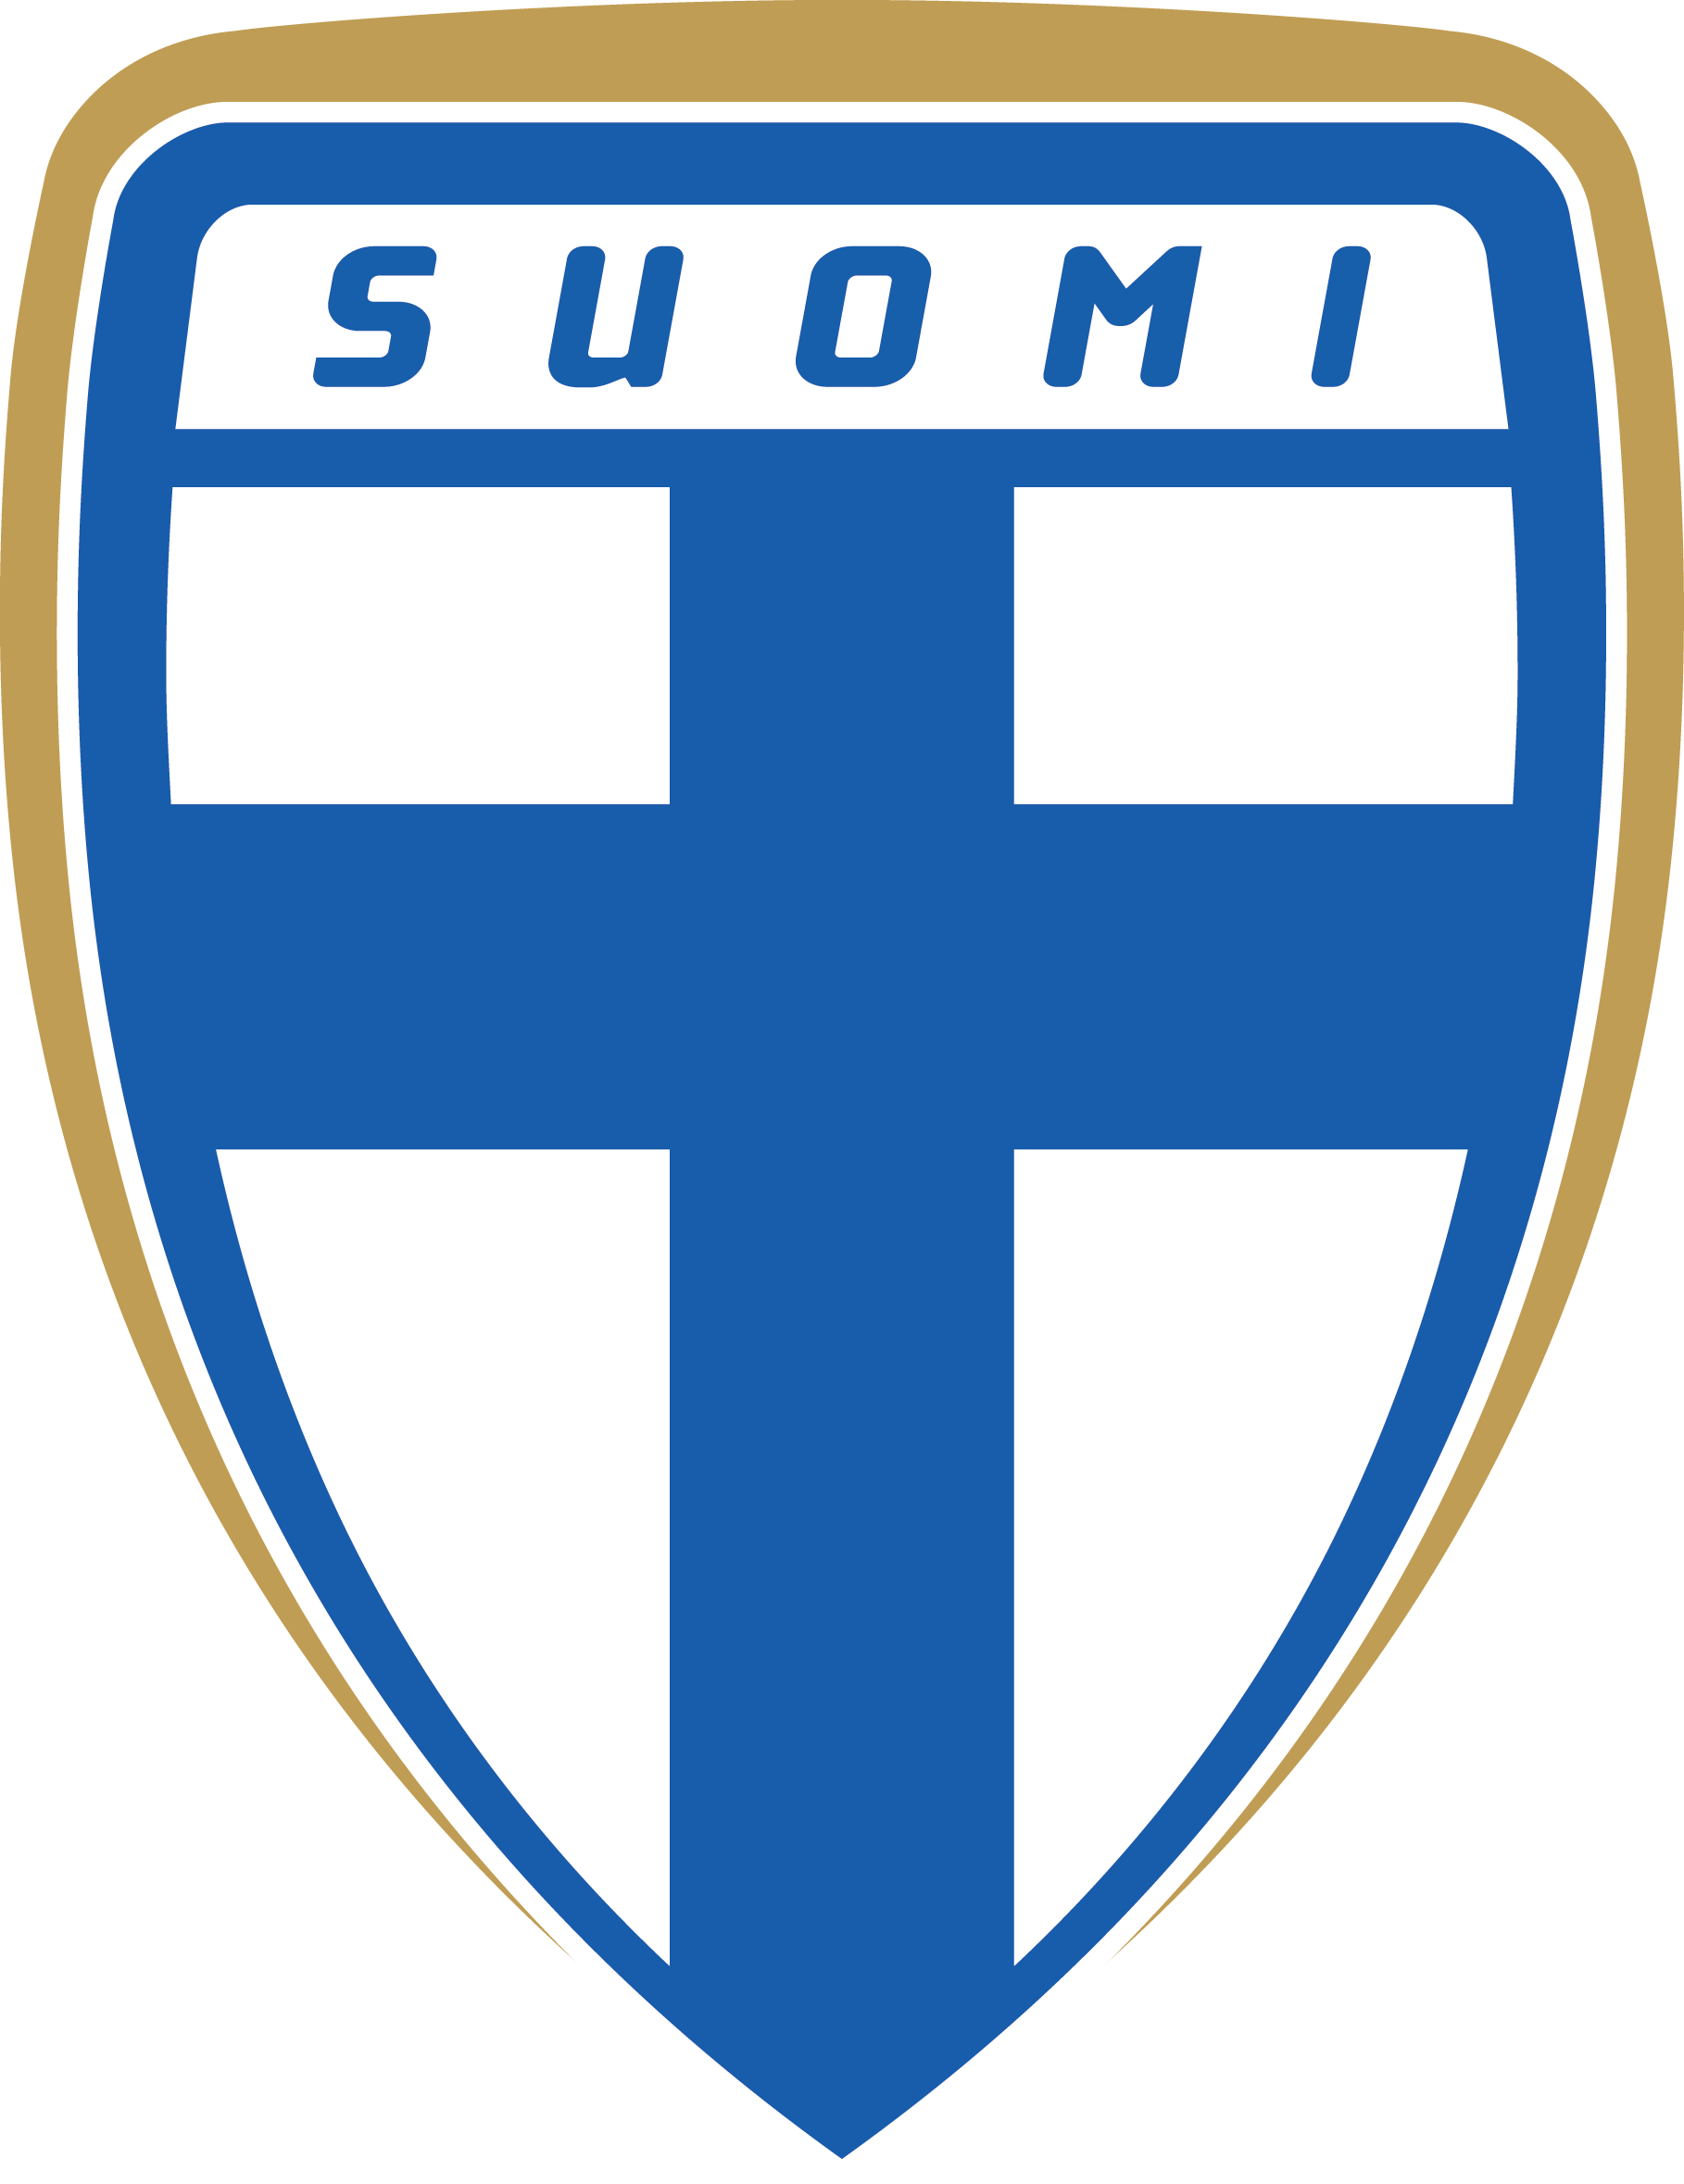 芬蘭國家男子足球隊